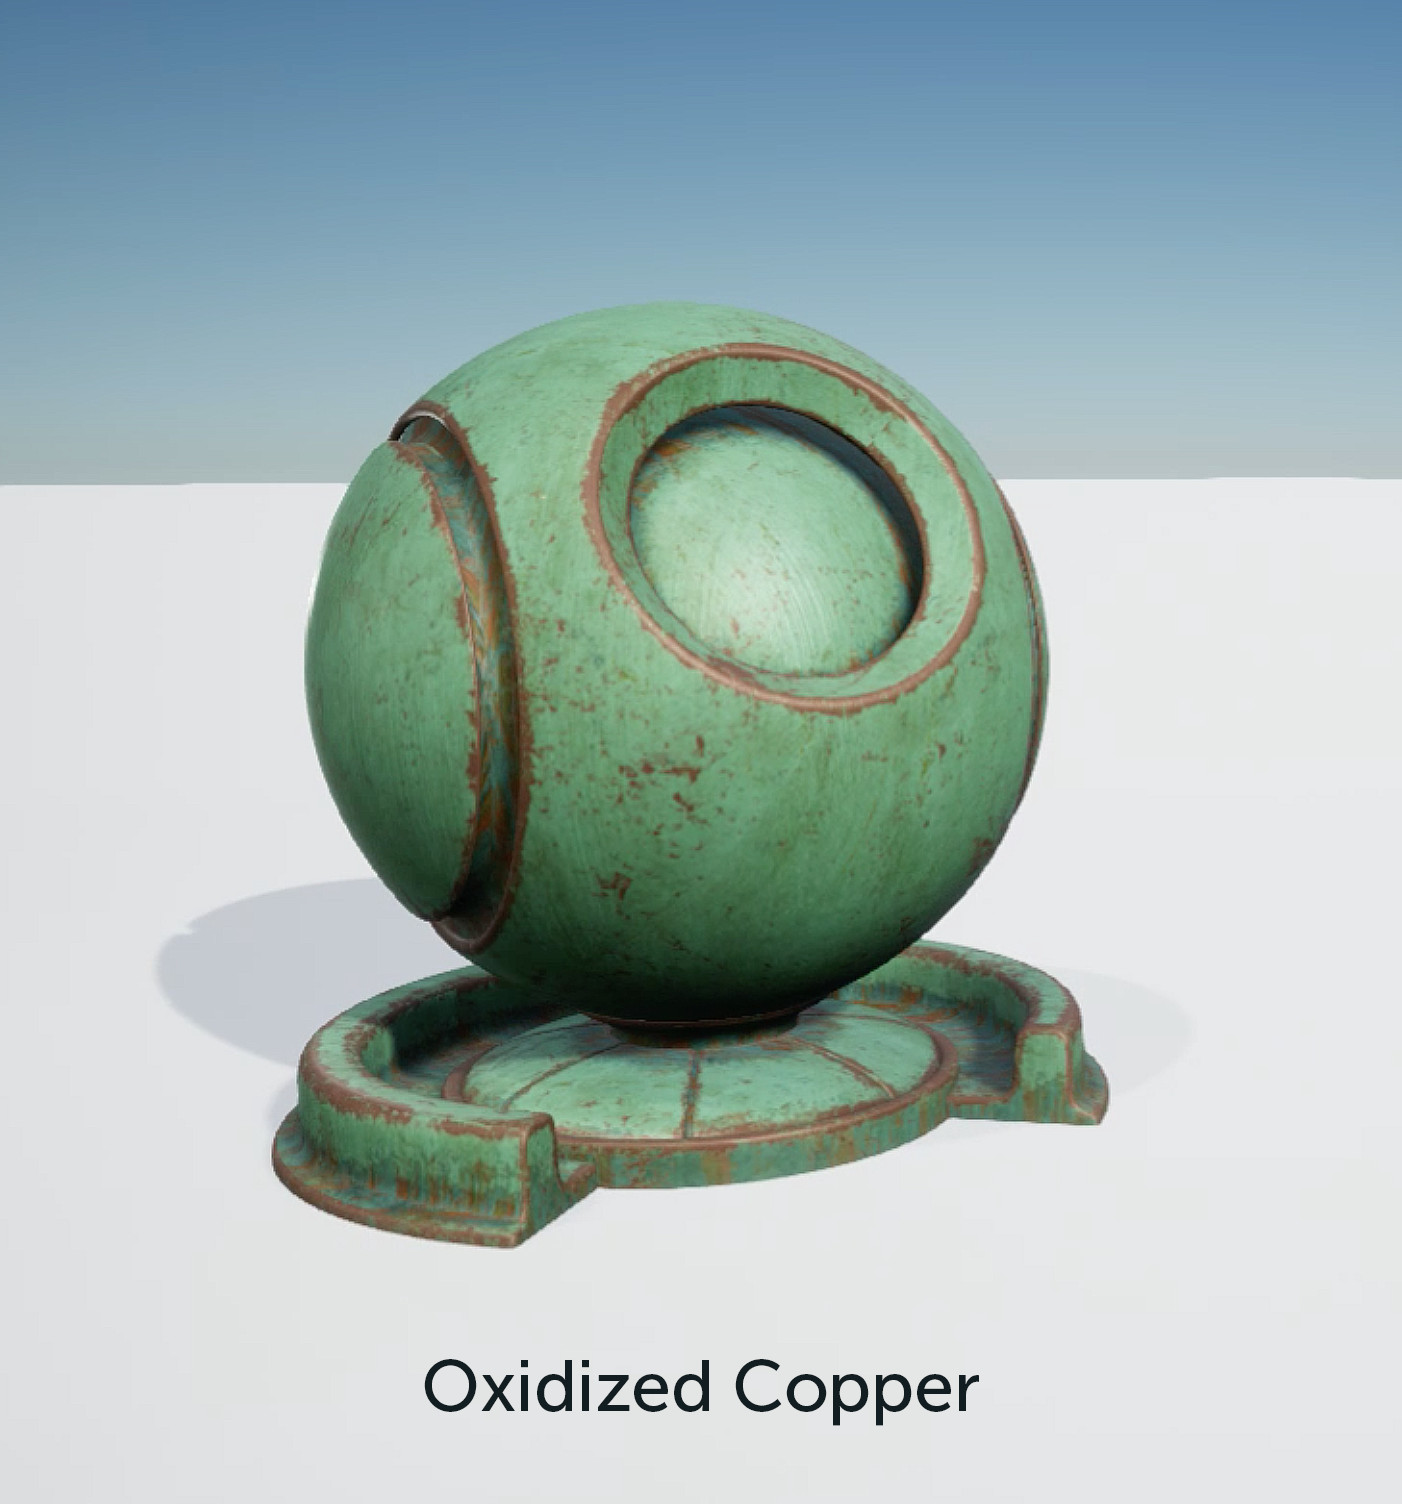 Oxidized Copper